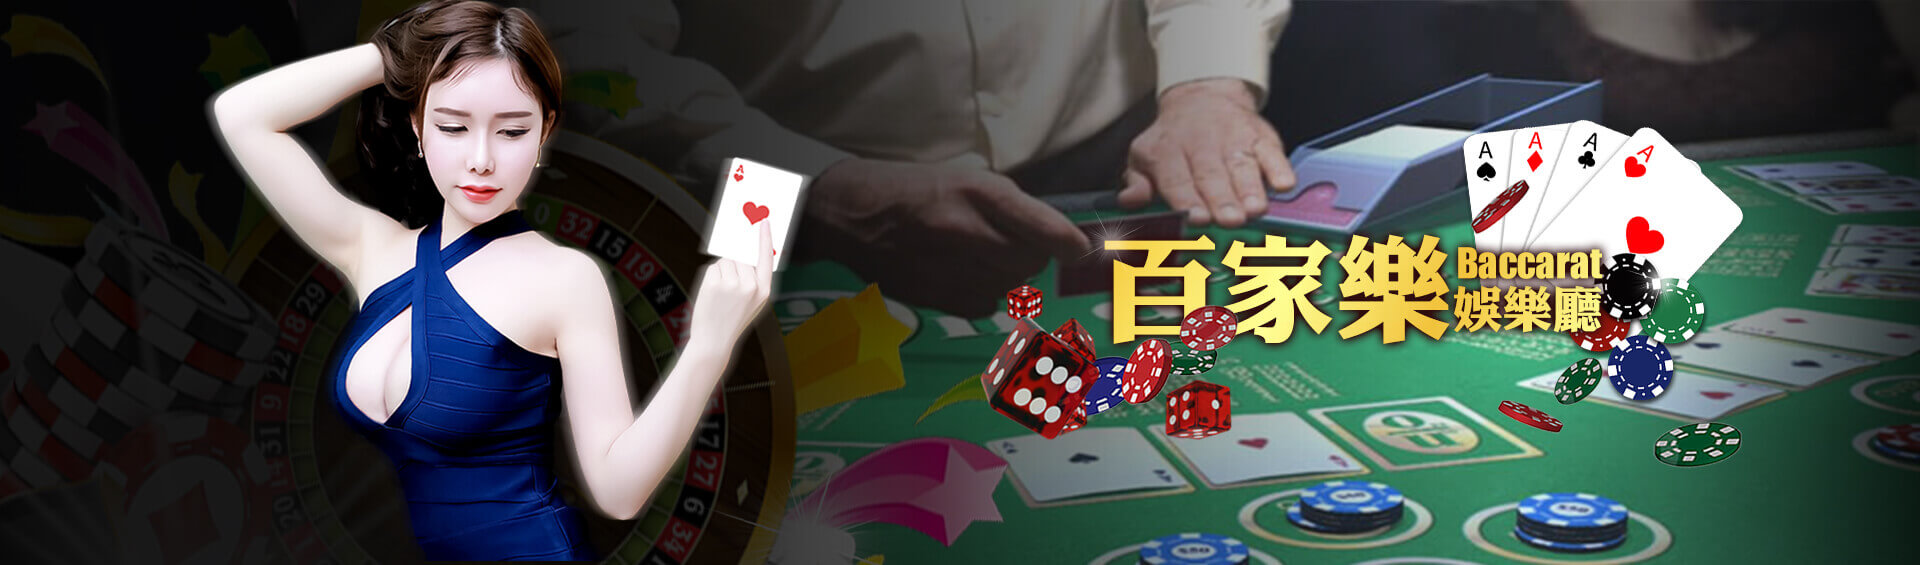 真人百家樂APP專用術語和11種遊戲賺錢預測算牌玩法